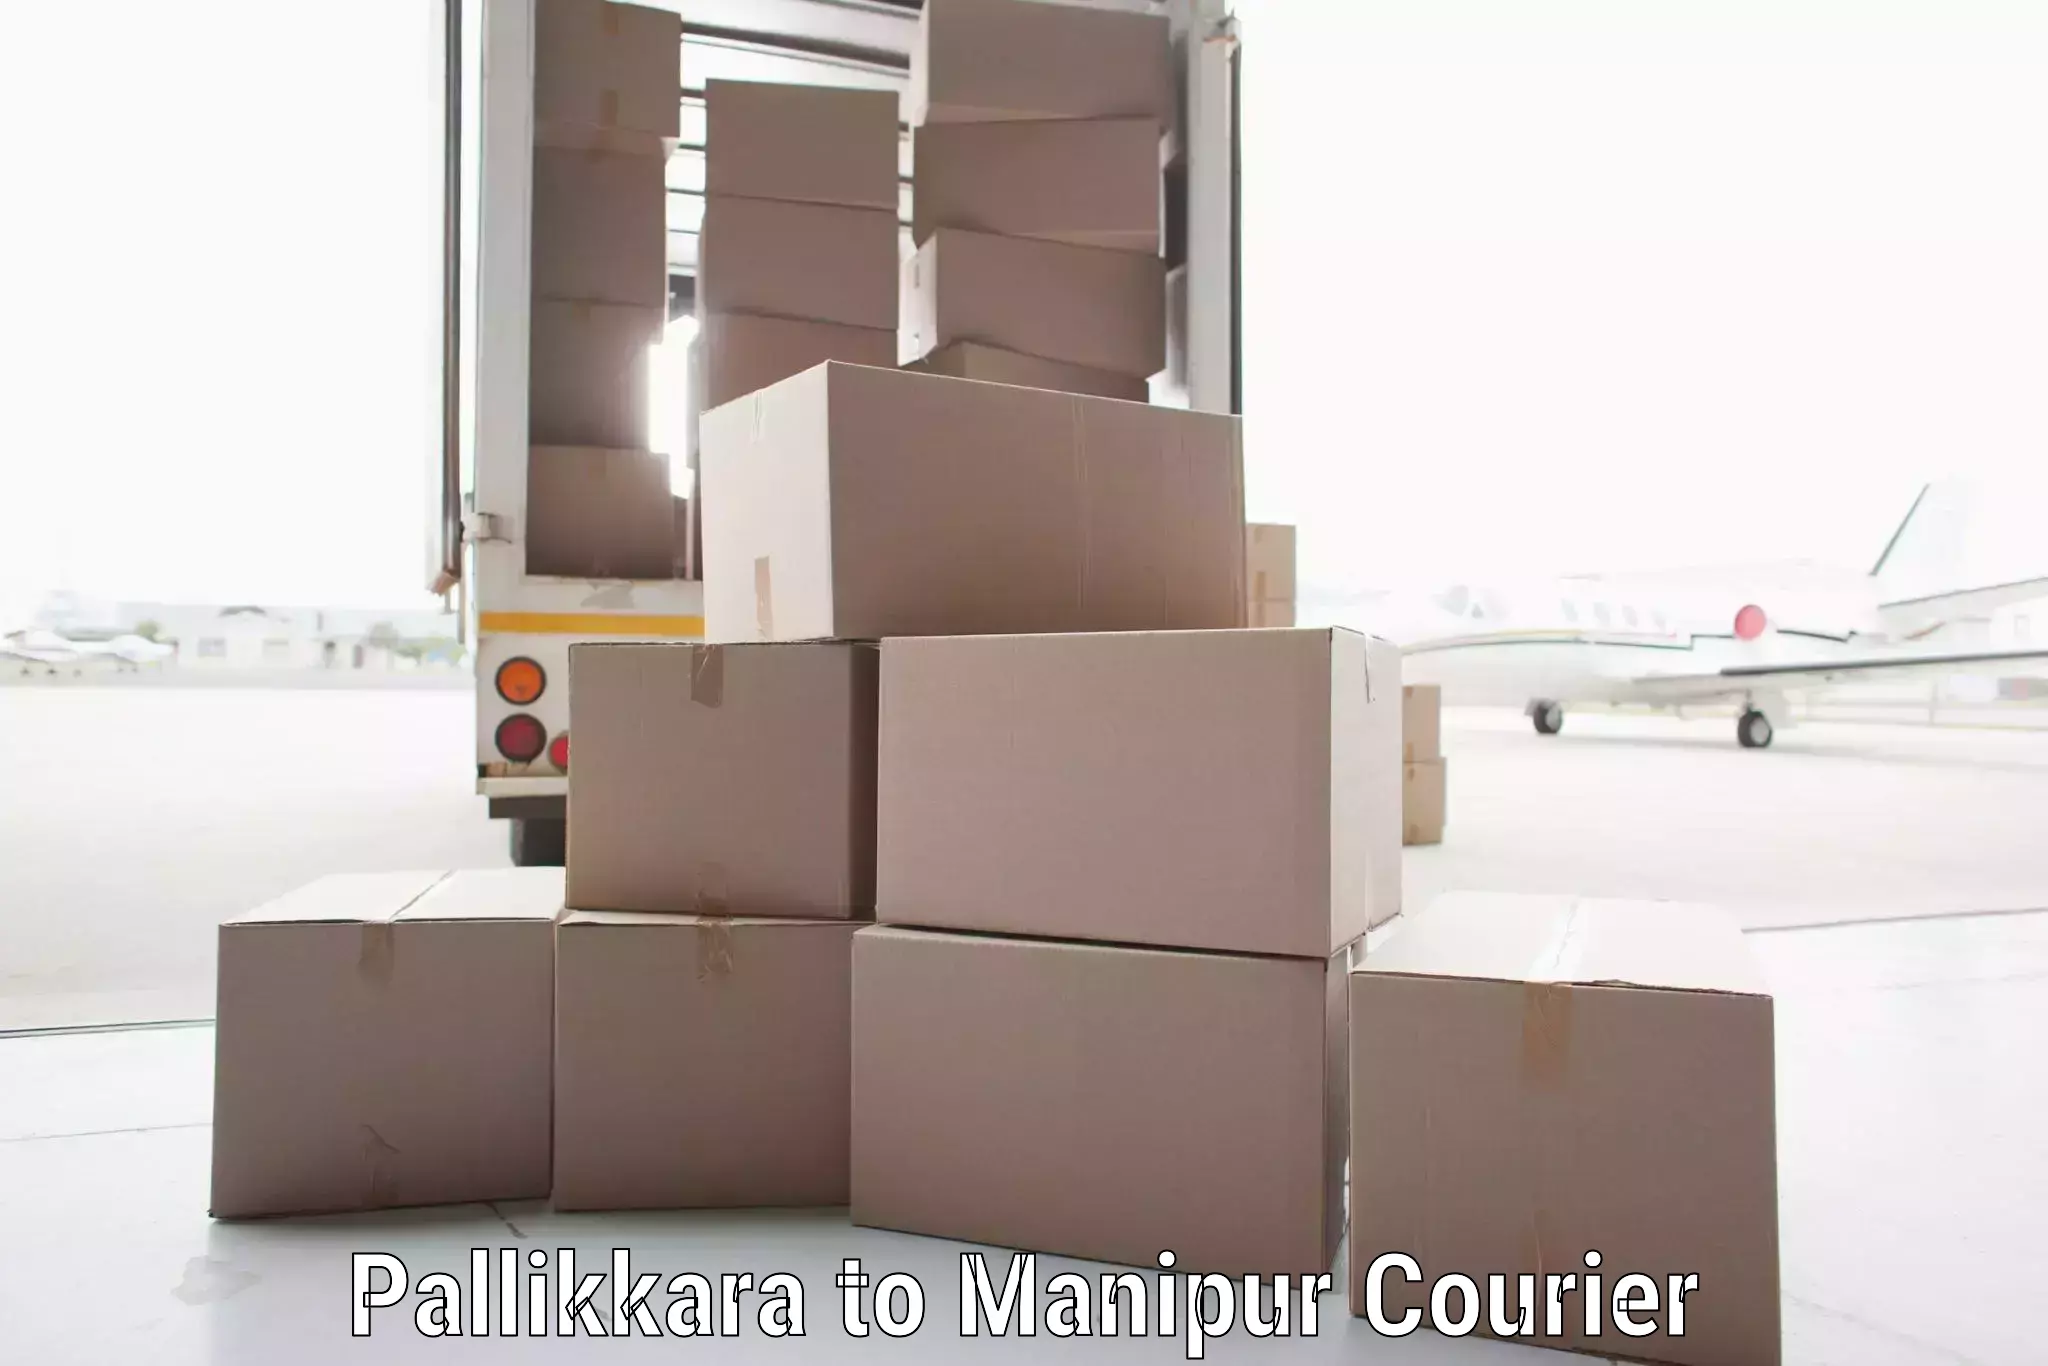 Door-to-door freight service Pallikkara to Manipur